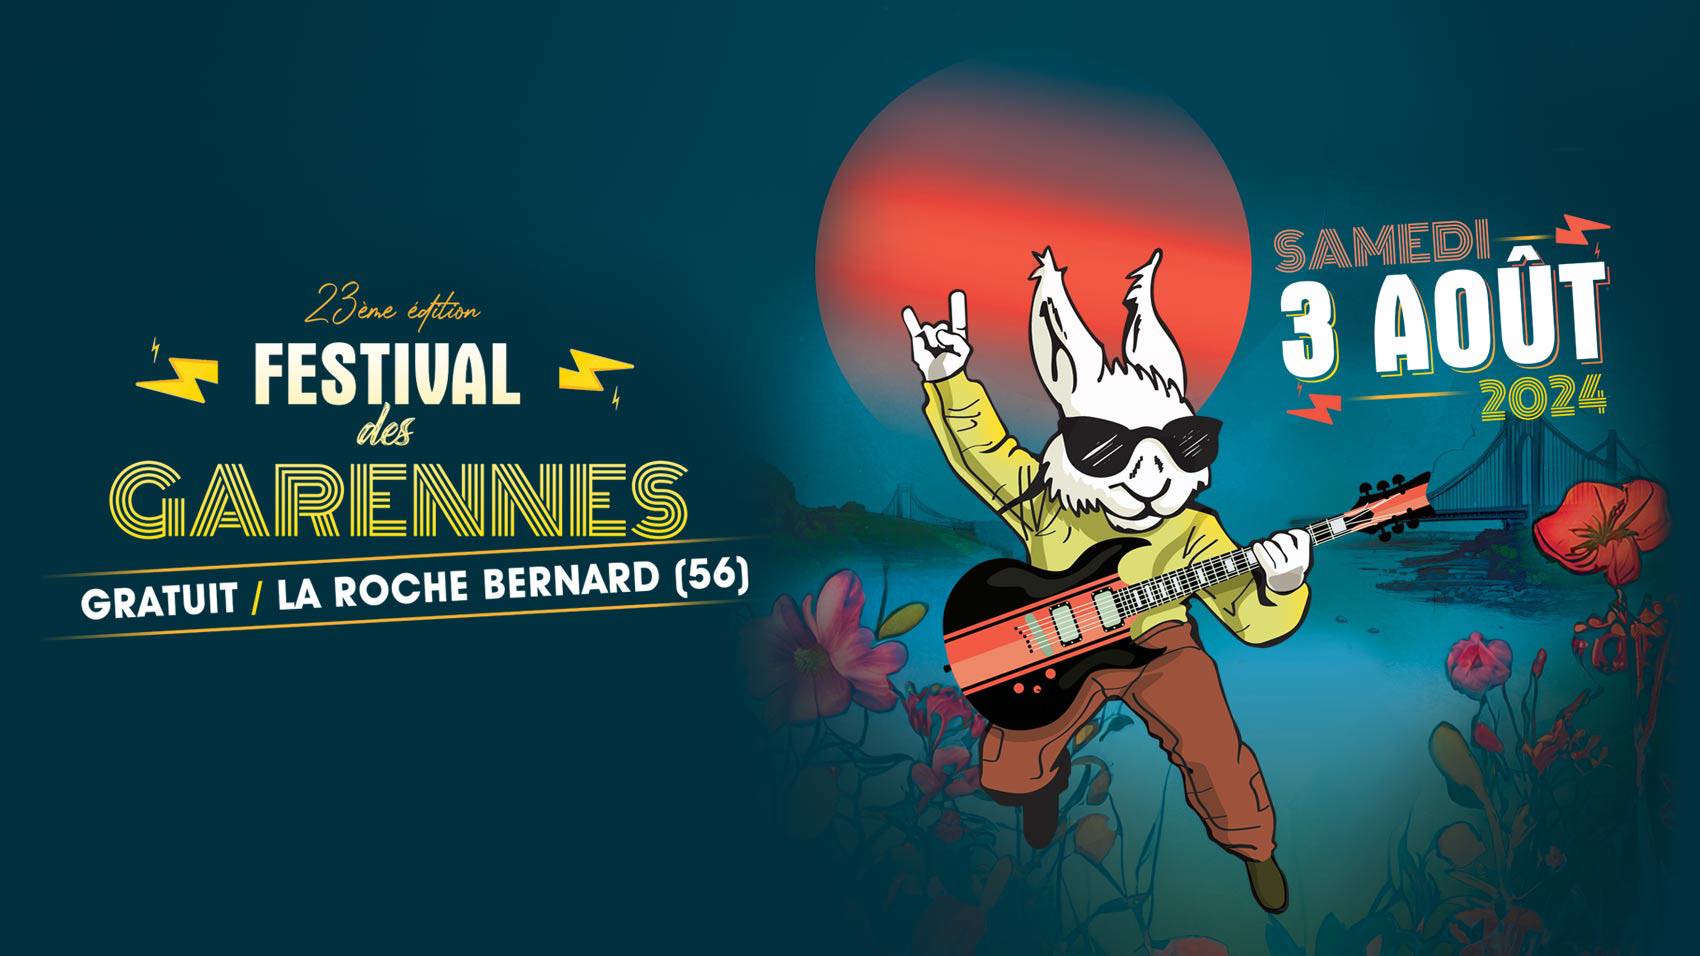 Festival des Garennes Le 3 août 2024